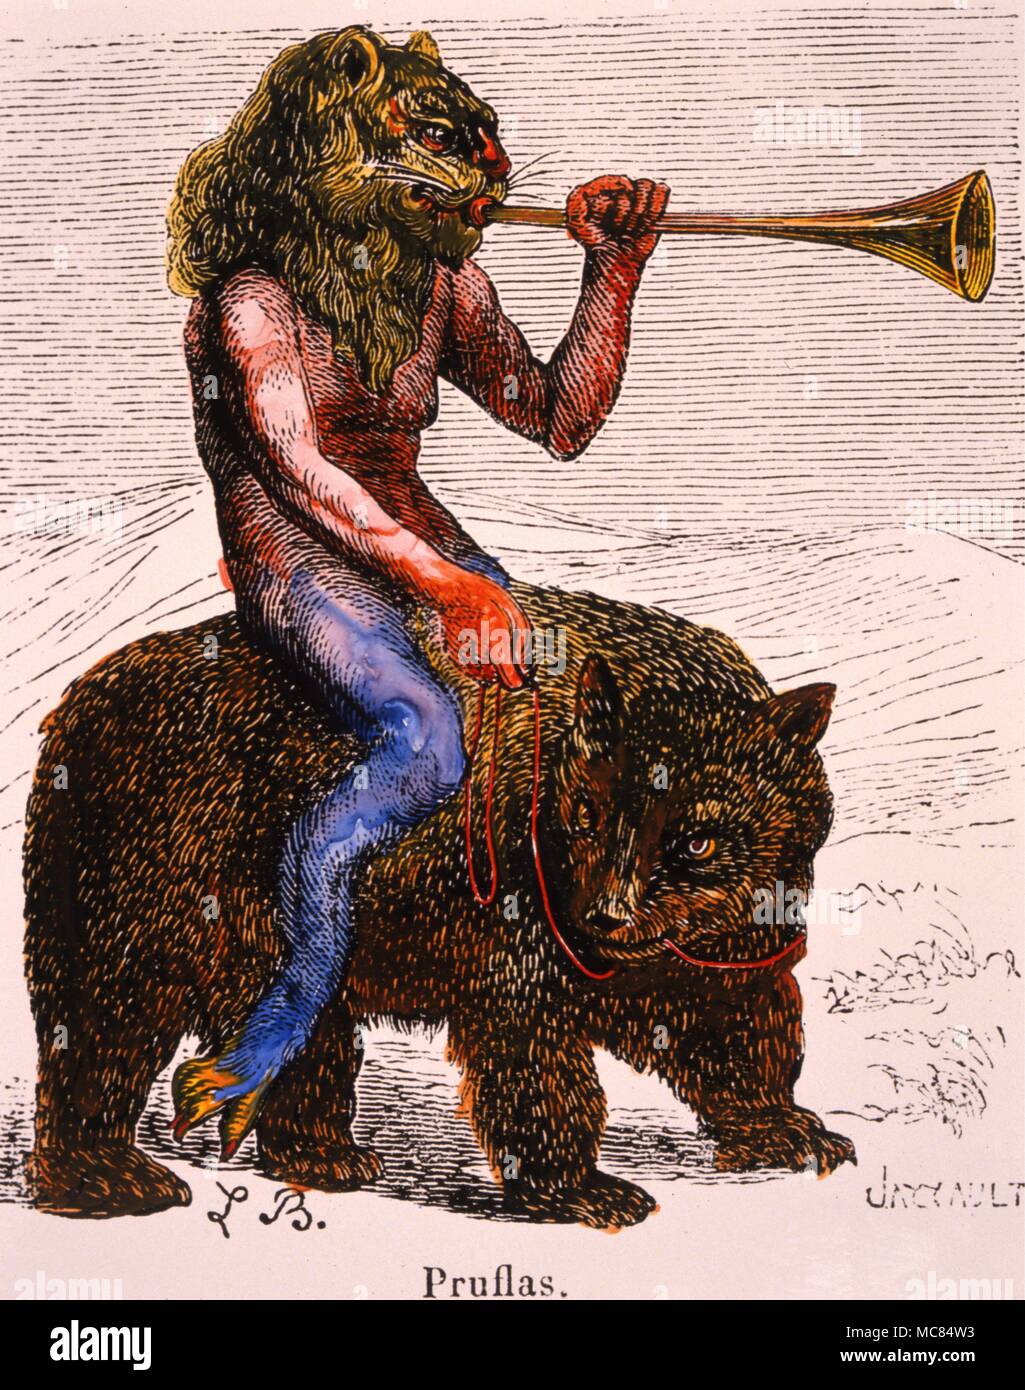 Le démon Pruflas, avec tête de lion, qui apparaît généralement à conjuration soufflant de la trompette, et d'équitation un ours-comme créature. De Collin de Plancy's 'Dictionnaire' Infernal [1863]. Banque D'Images